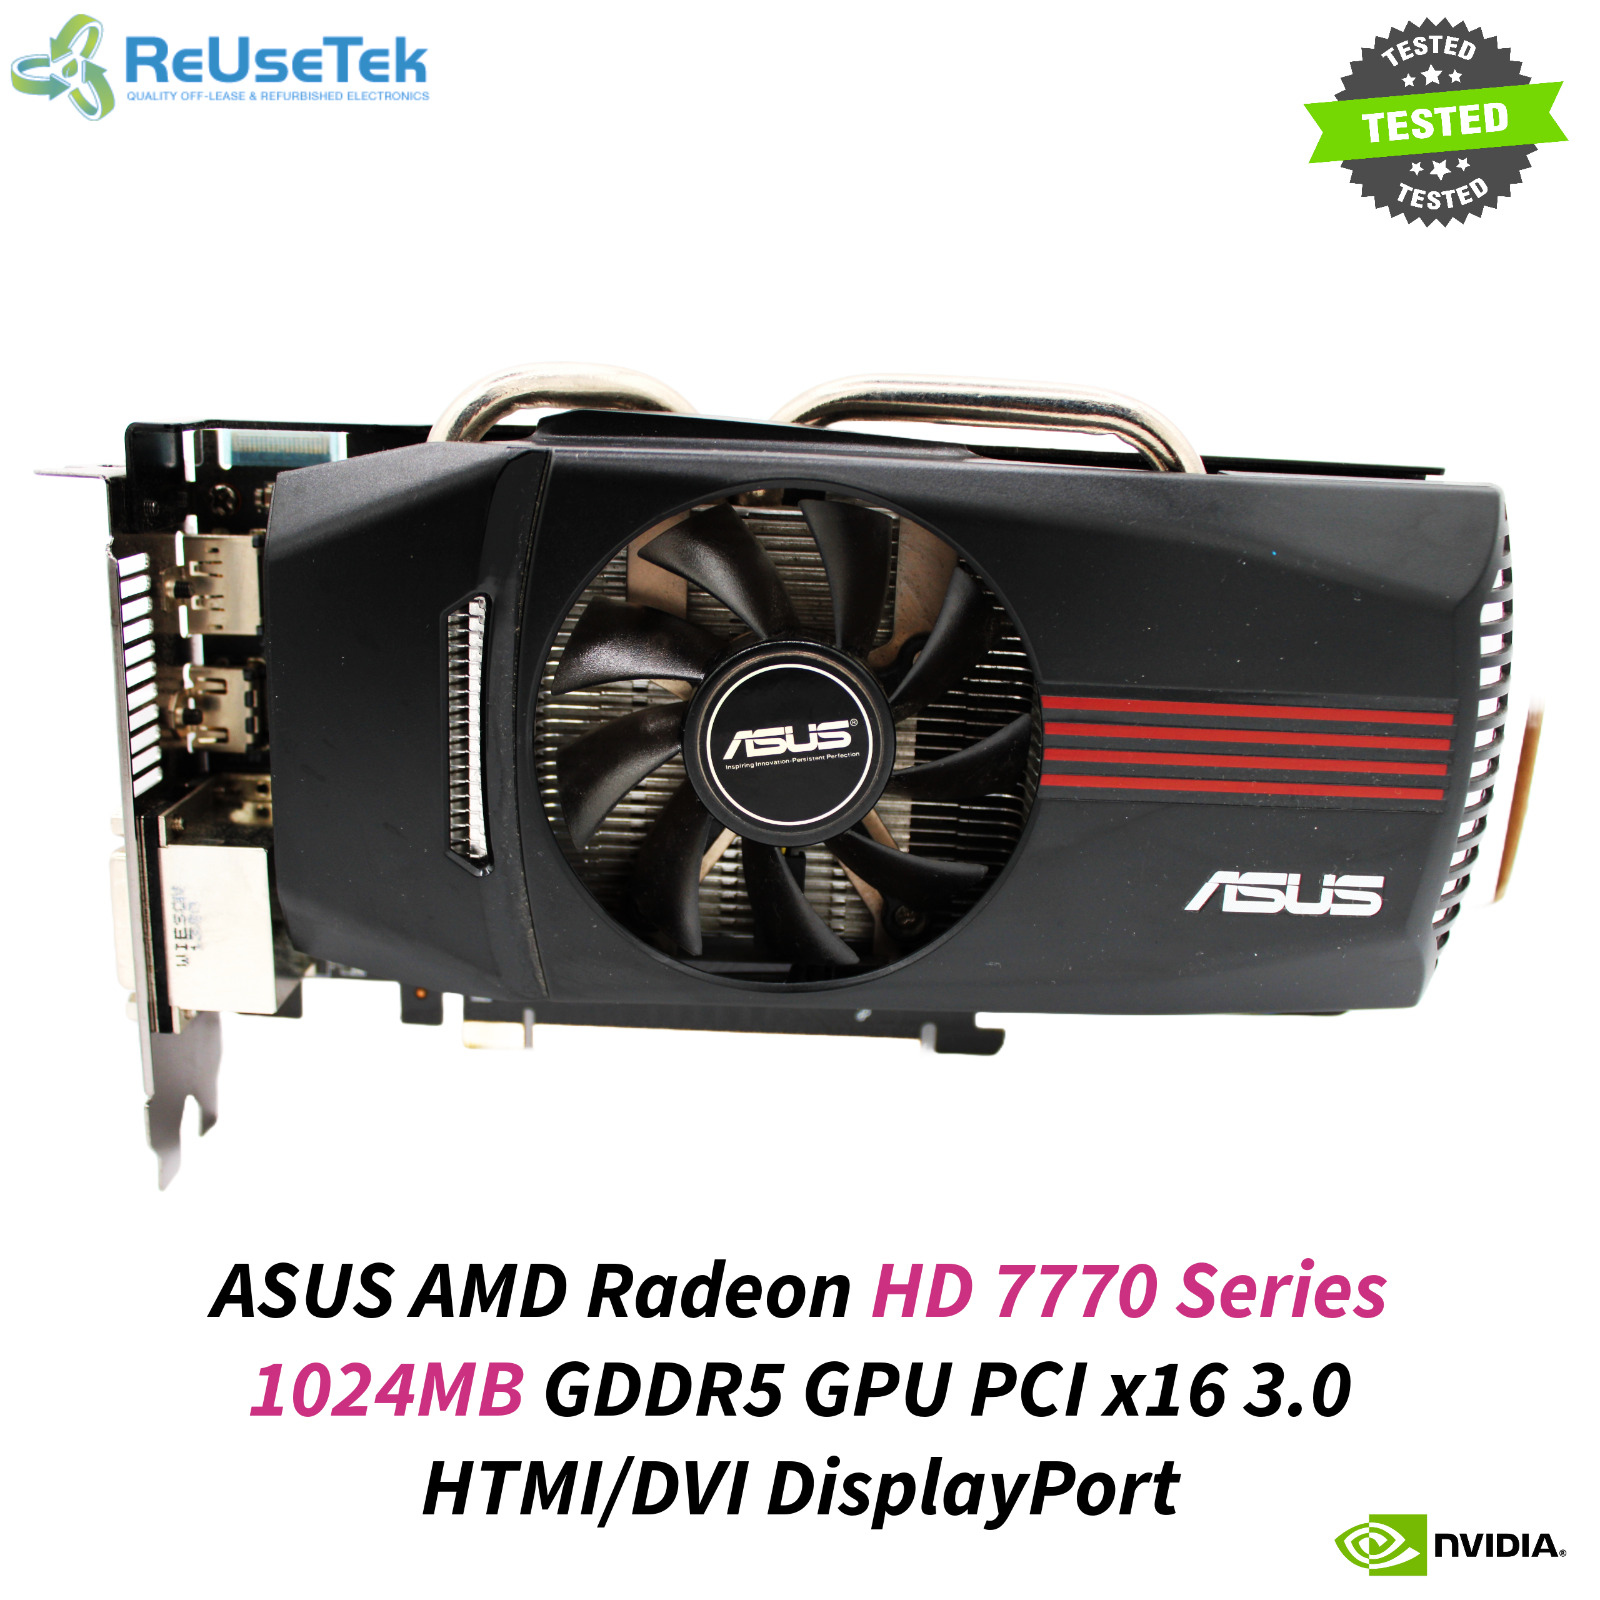 ASUS AMD Radeon HD 7770 Series 1024MB GDDR5 GPU PCI x16 3.0 HTMI/DVI DisplayPort